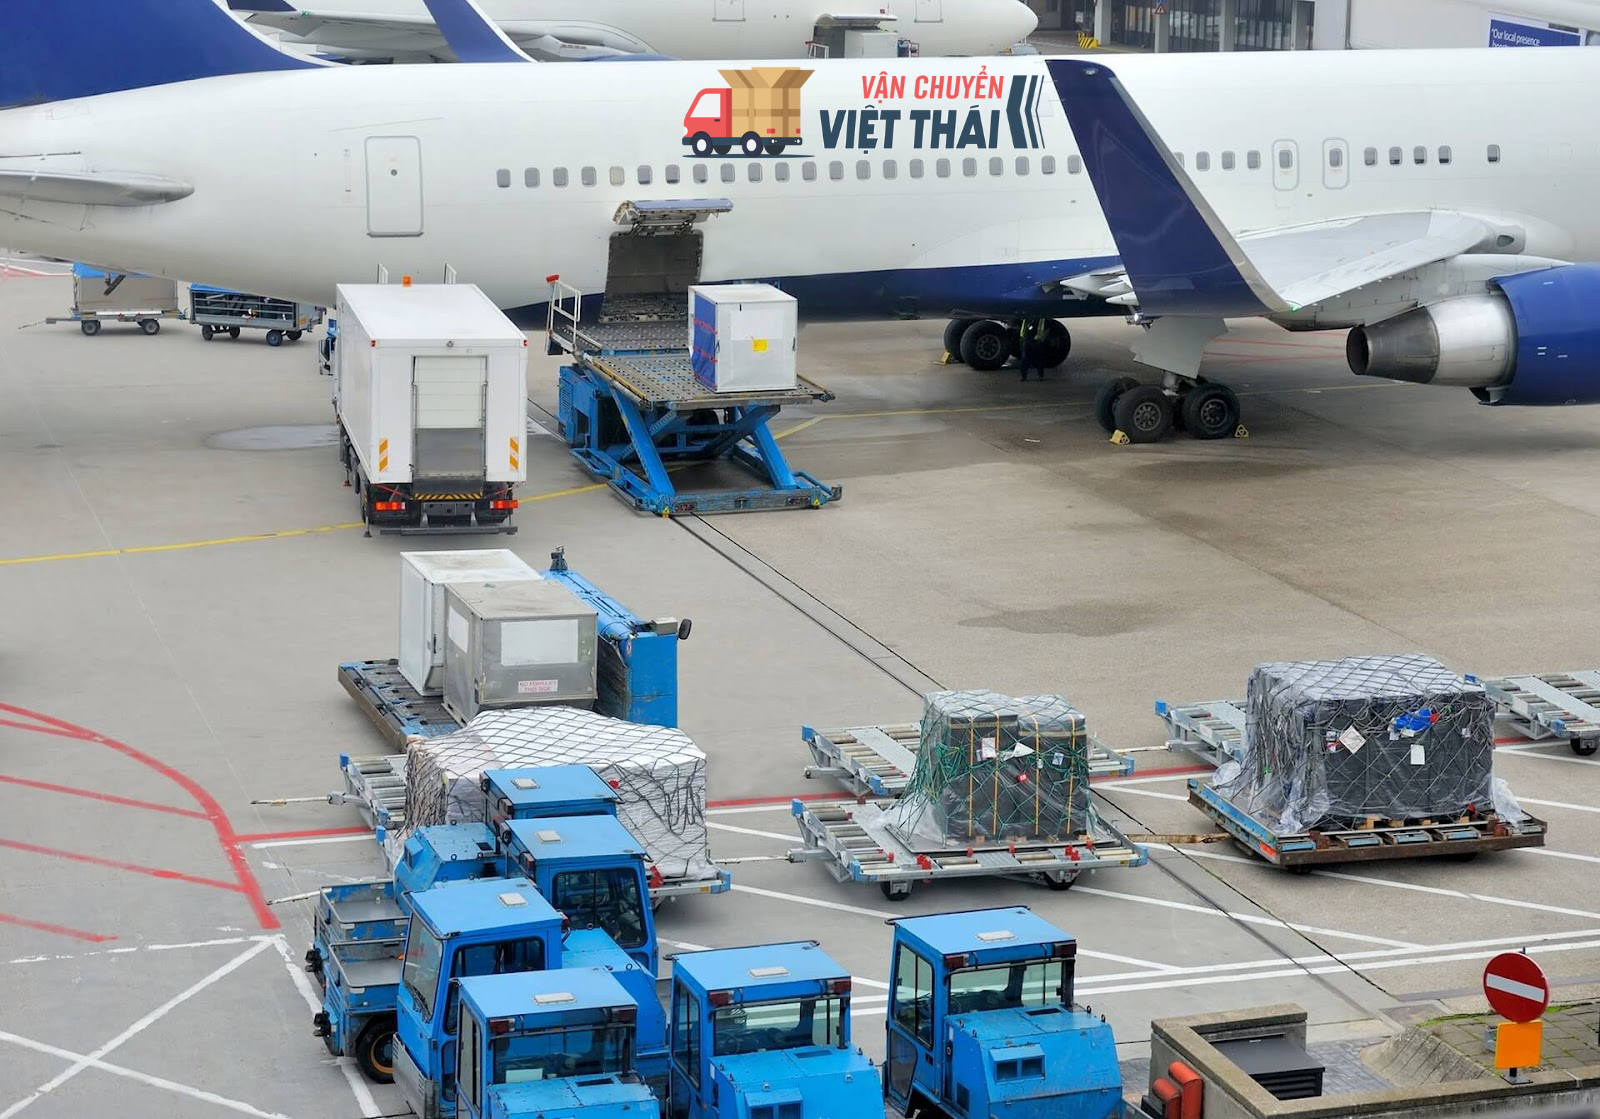 Lợi ích khi sử dụng dịch vụ vận chuyển của Vận chuyển Việt Thái